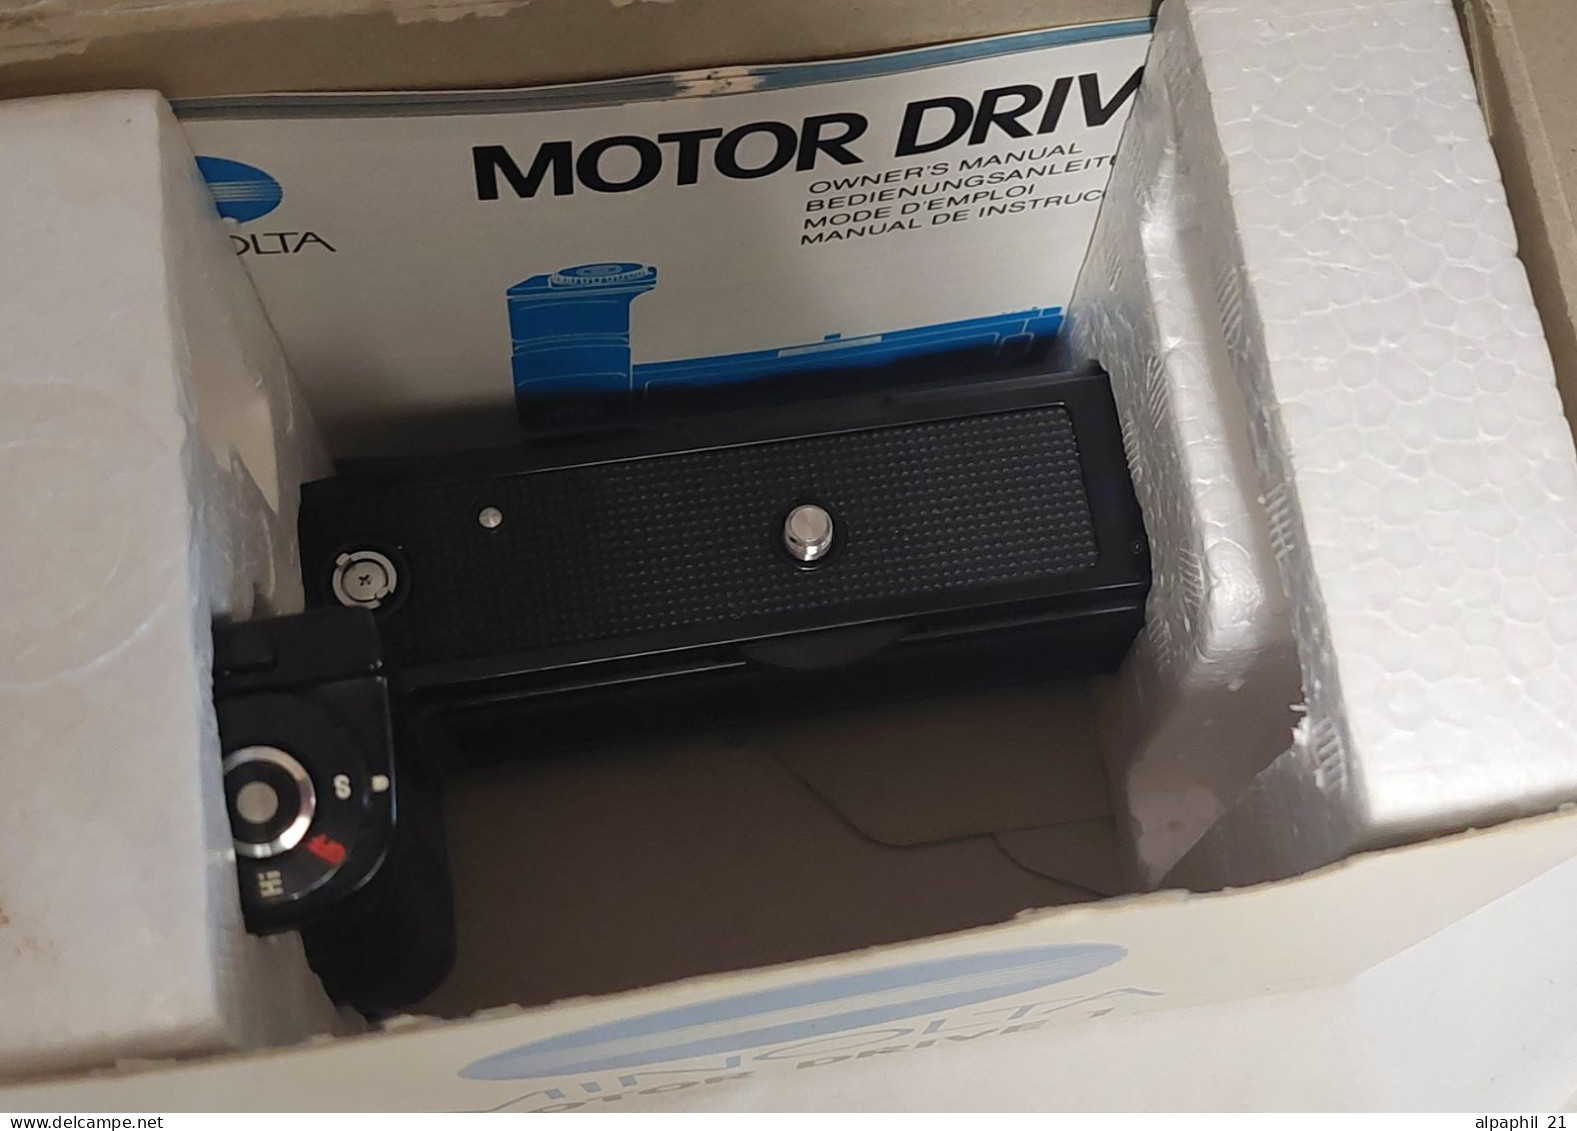 Minolta Motor Drive 1 - Zubehör & Material